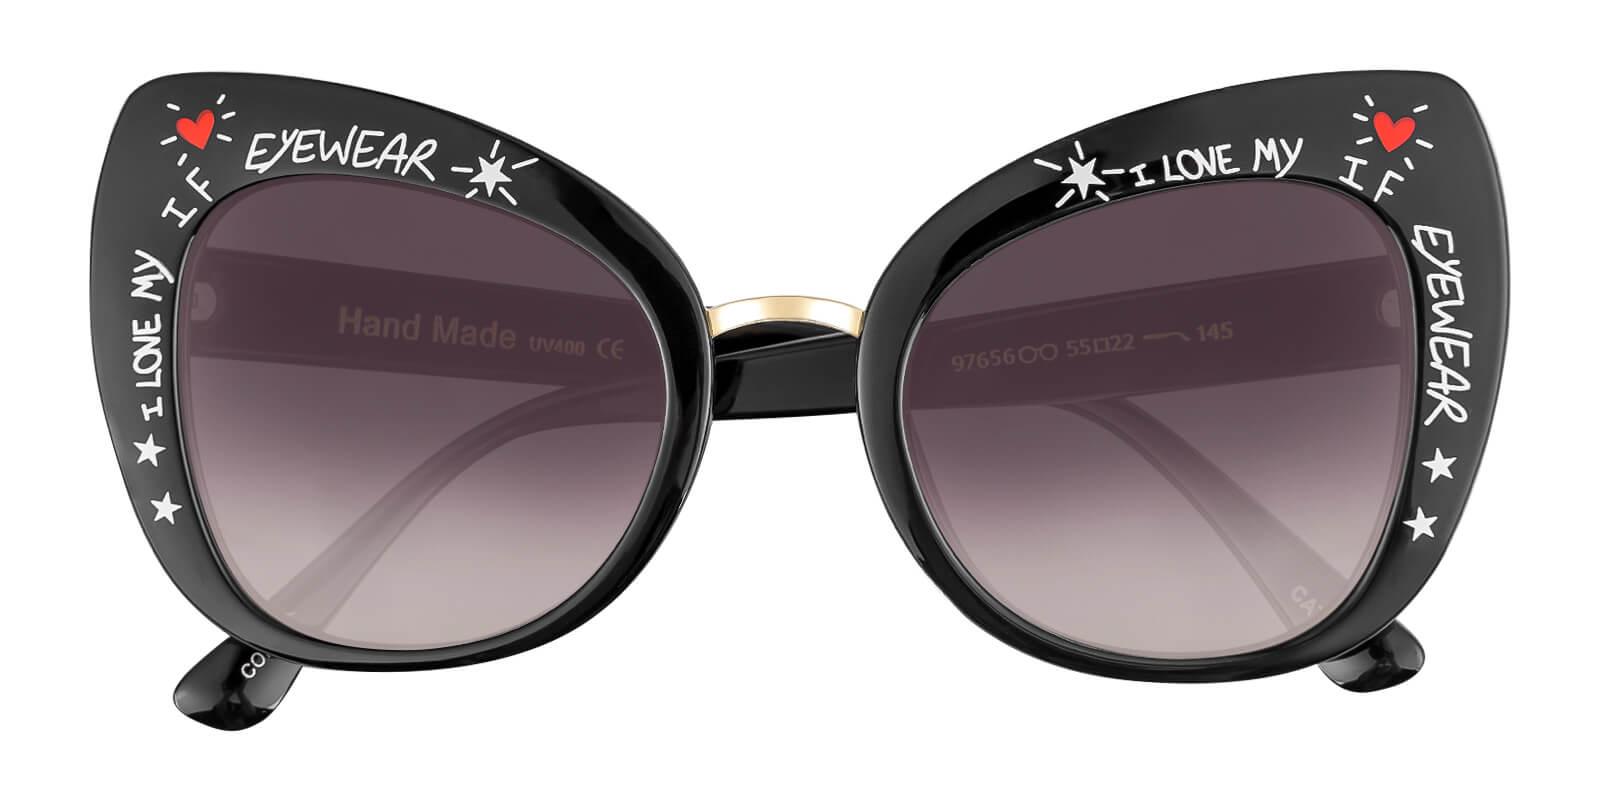 Borneo Black Plastic Fashion , Sunglasses Frames from ABBE Glasses